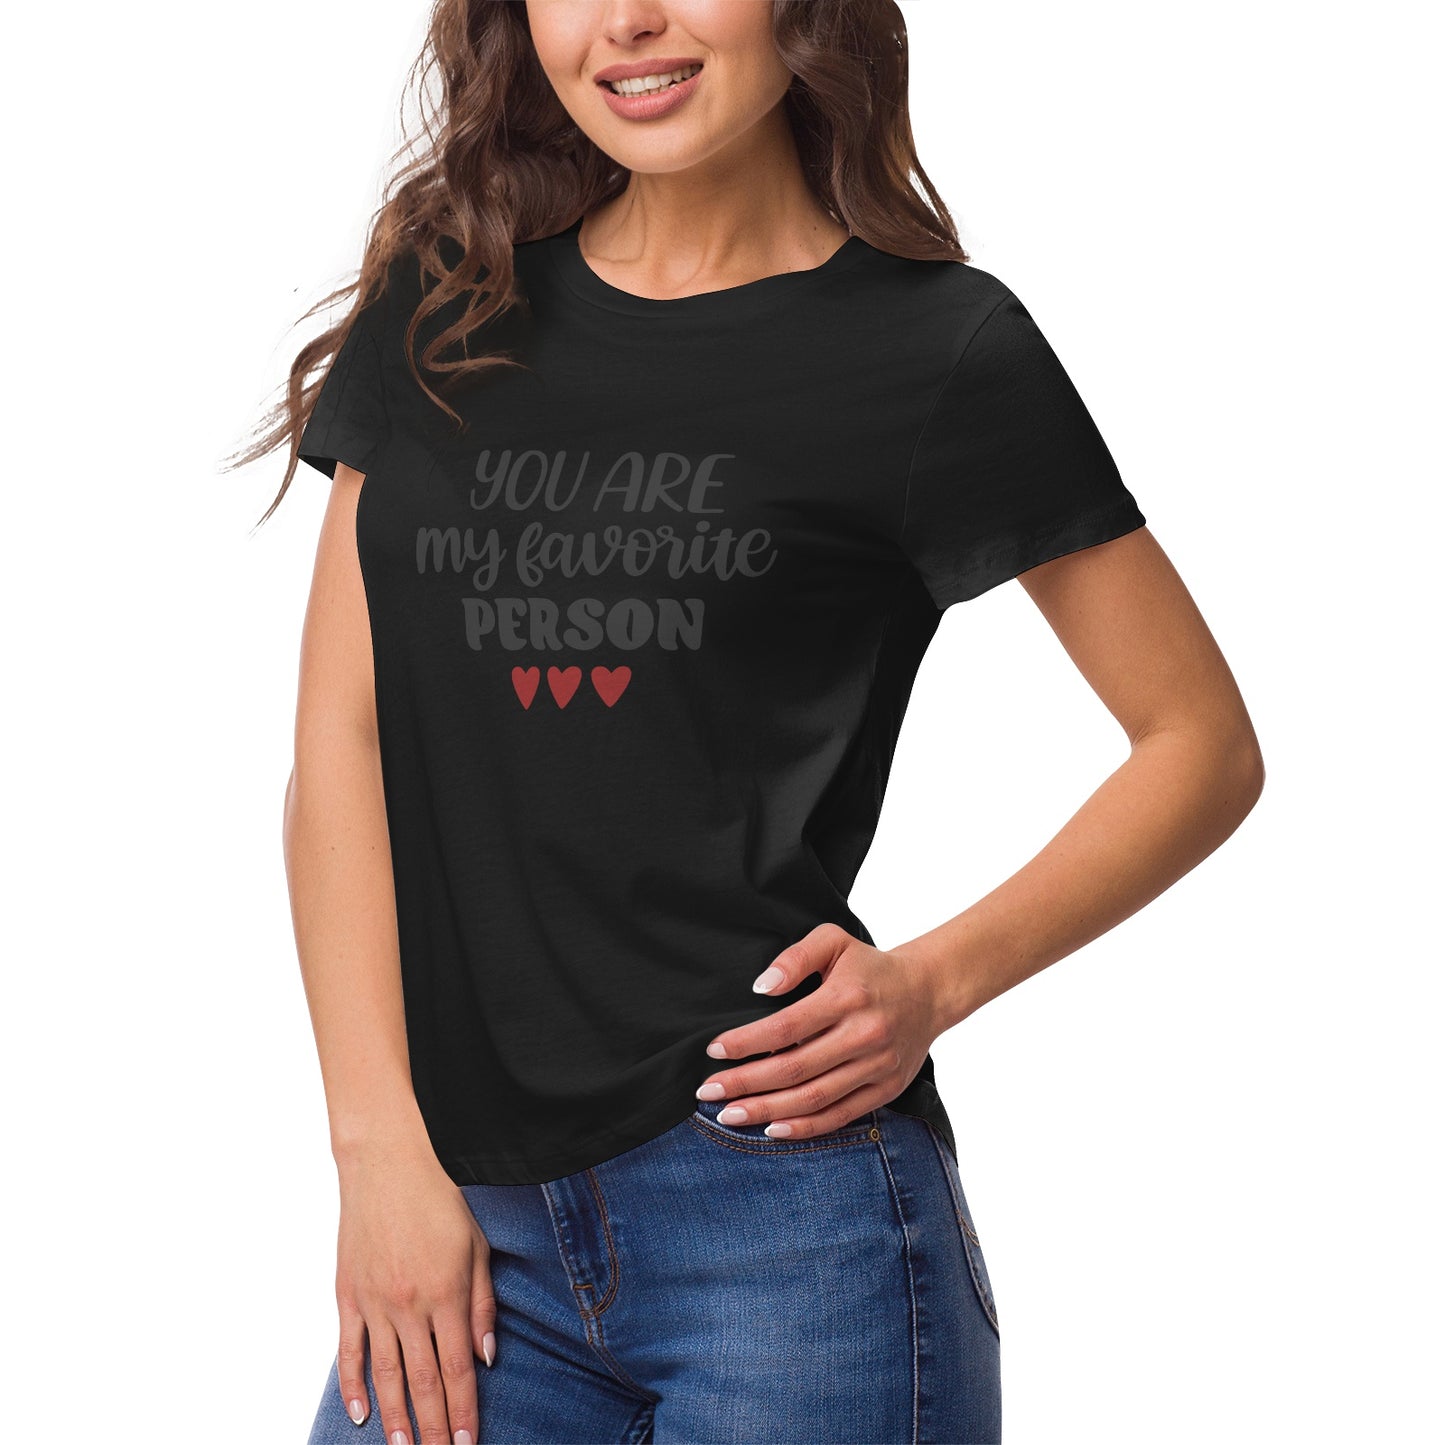 Fantasy 11 Women's Ultrasoft Pima Cotton T‑shirt - DromedarShop.com Online Boutique